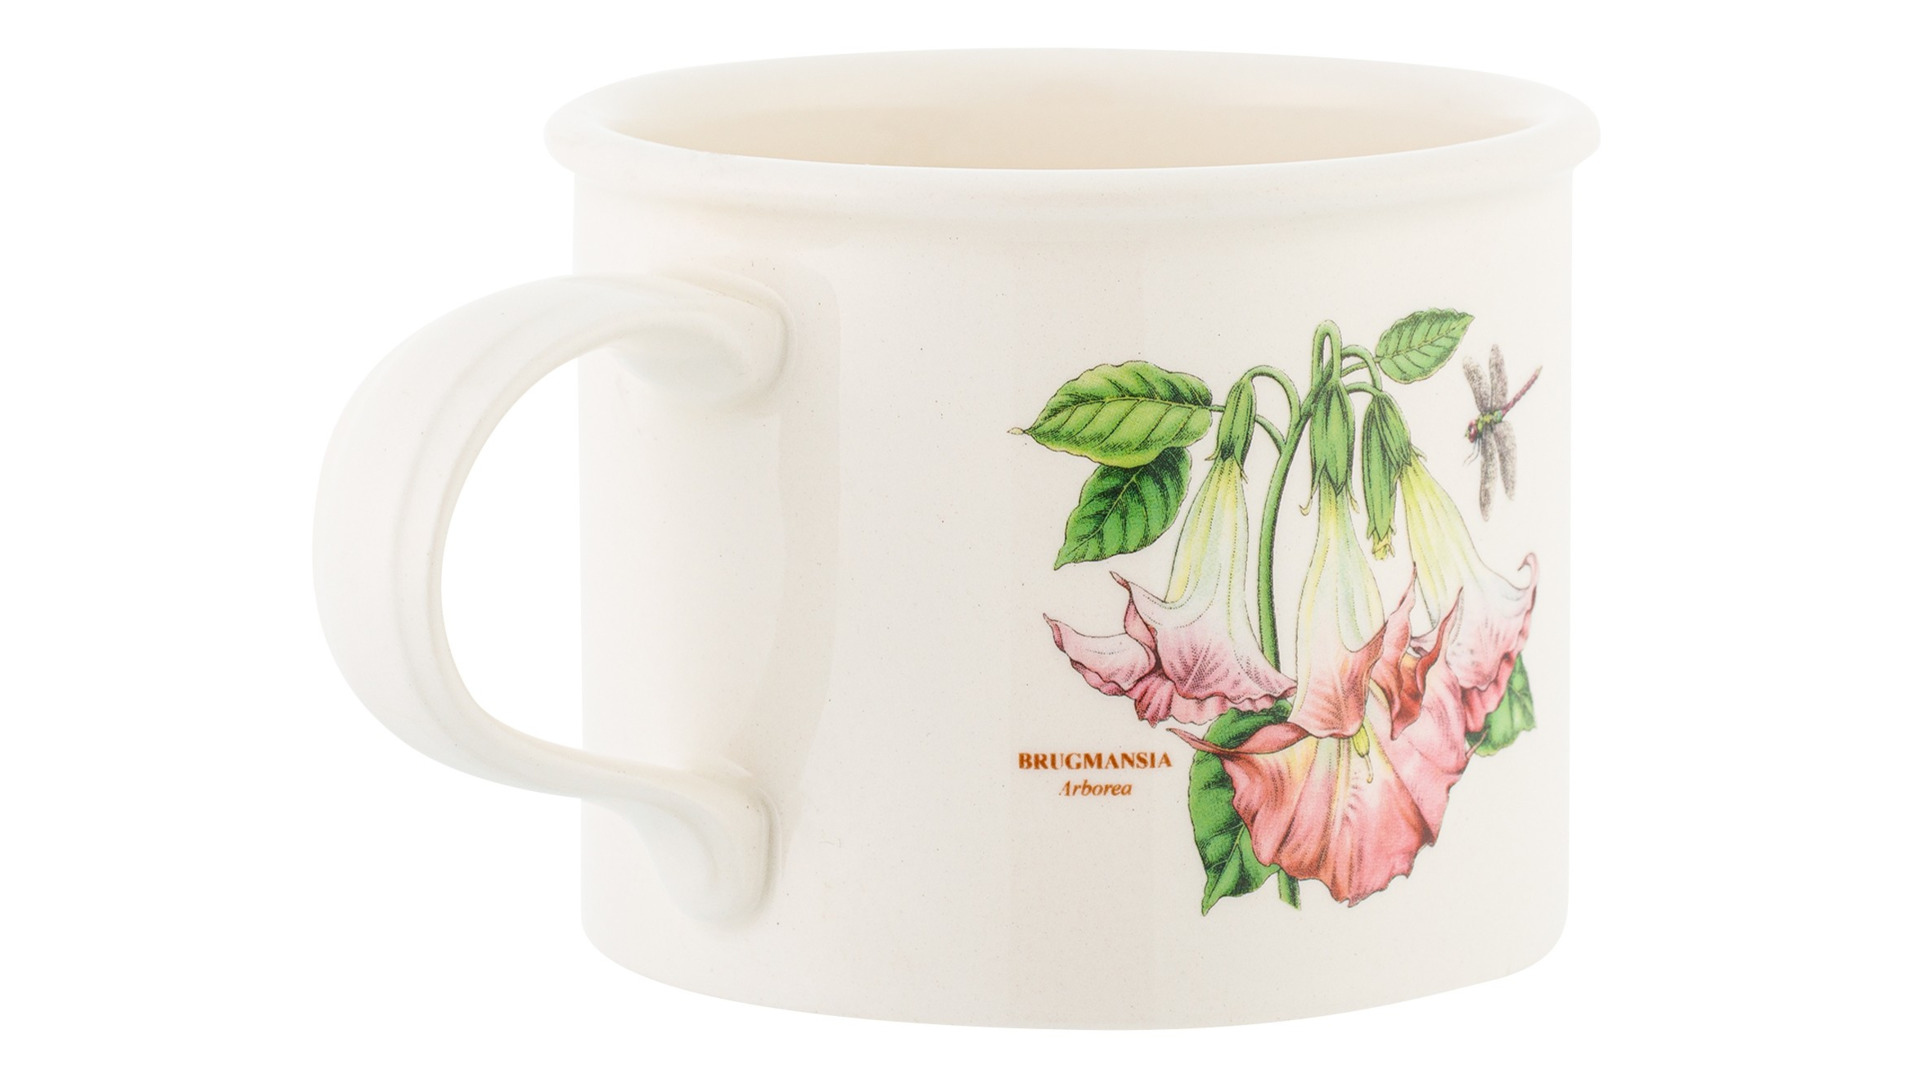 Чашка чайная с блюдцем Portmeirion Ботанический сад Рельеф Гвоздика турецкая 260 мл